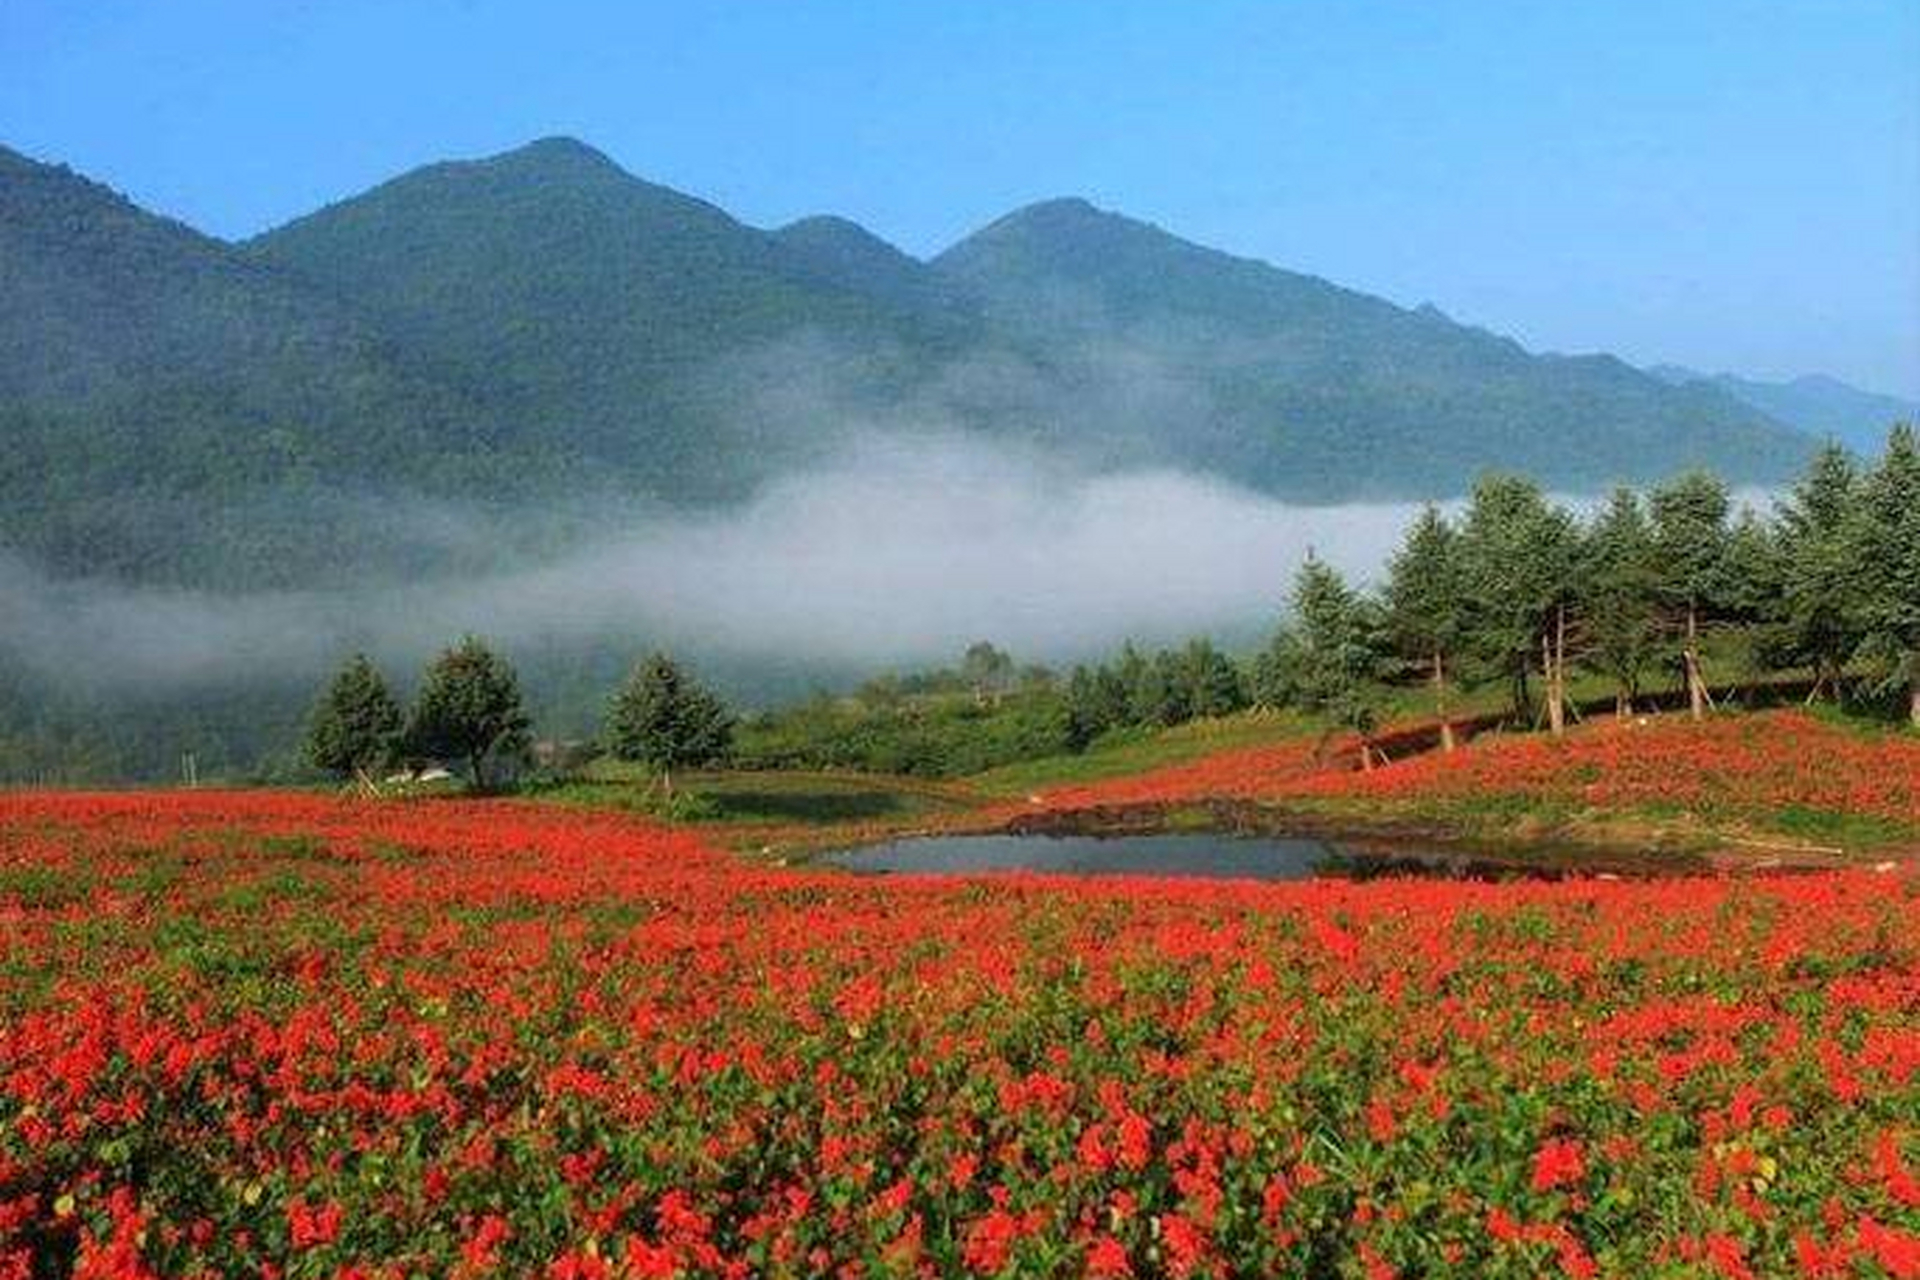 红池坝景区位于重庆市巫溪县,是一个融合自然风光与人文景观的绝佳